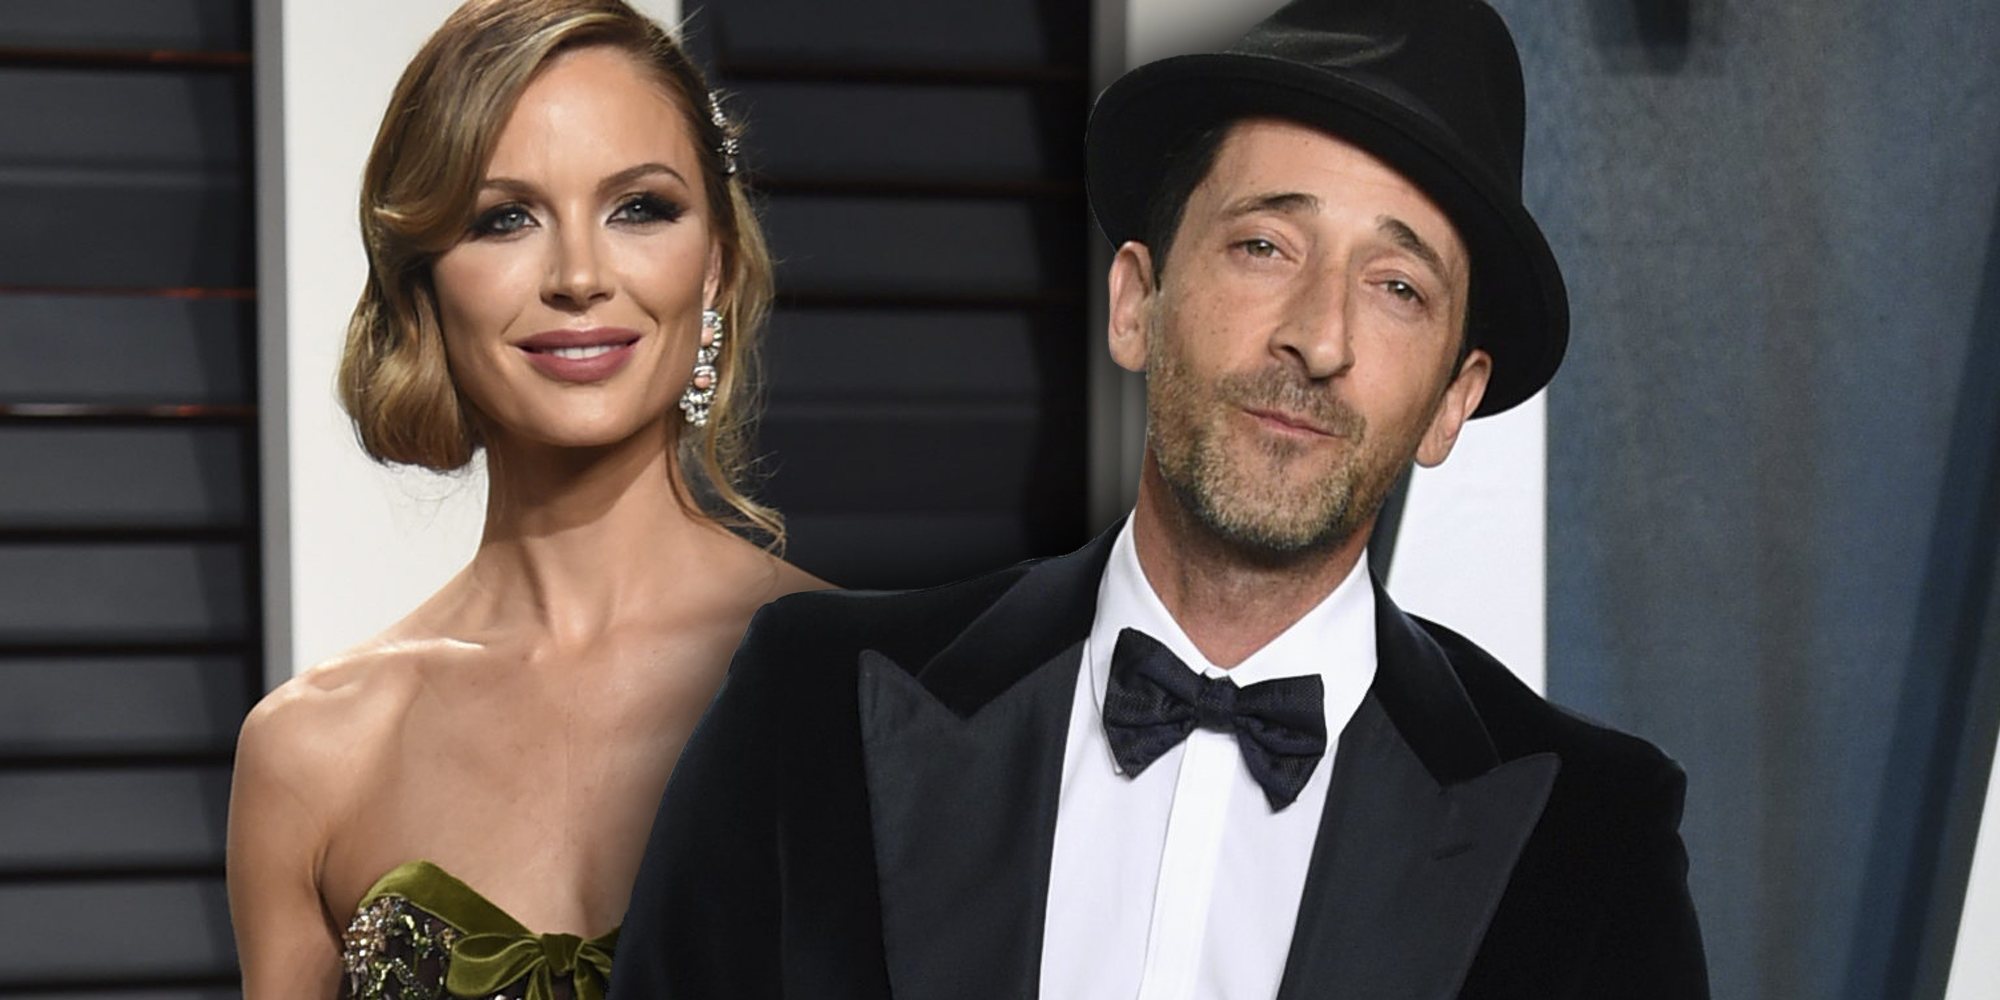 Georgina Chapman, exmujer de Harvey Weinstein, tiene nueva pareja: el actor Adrien Brody